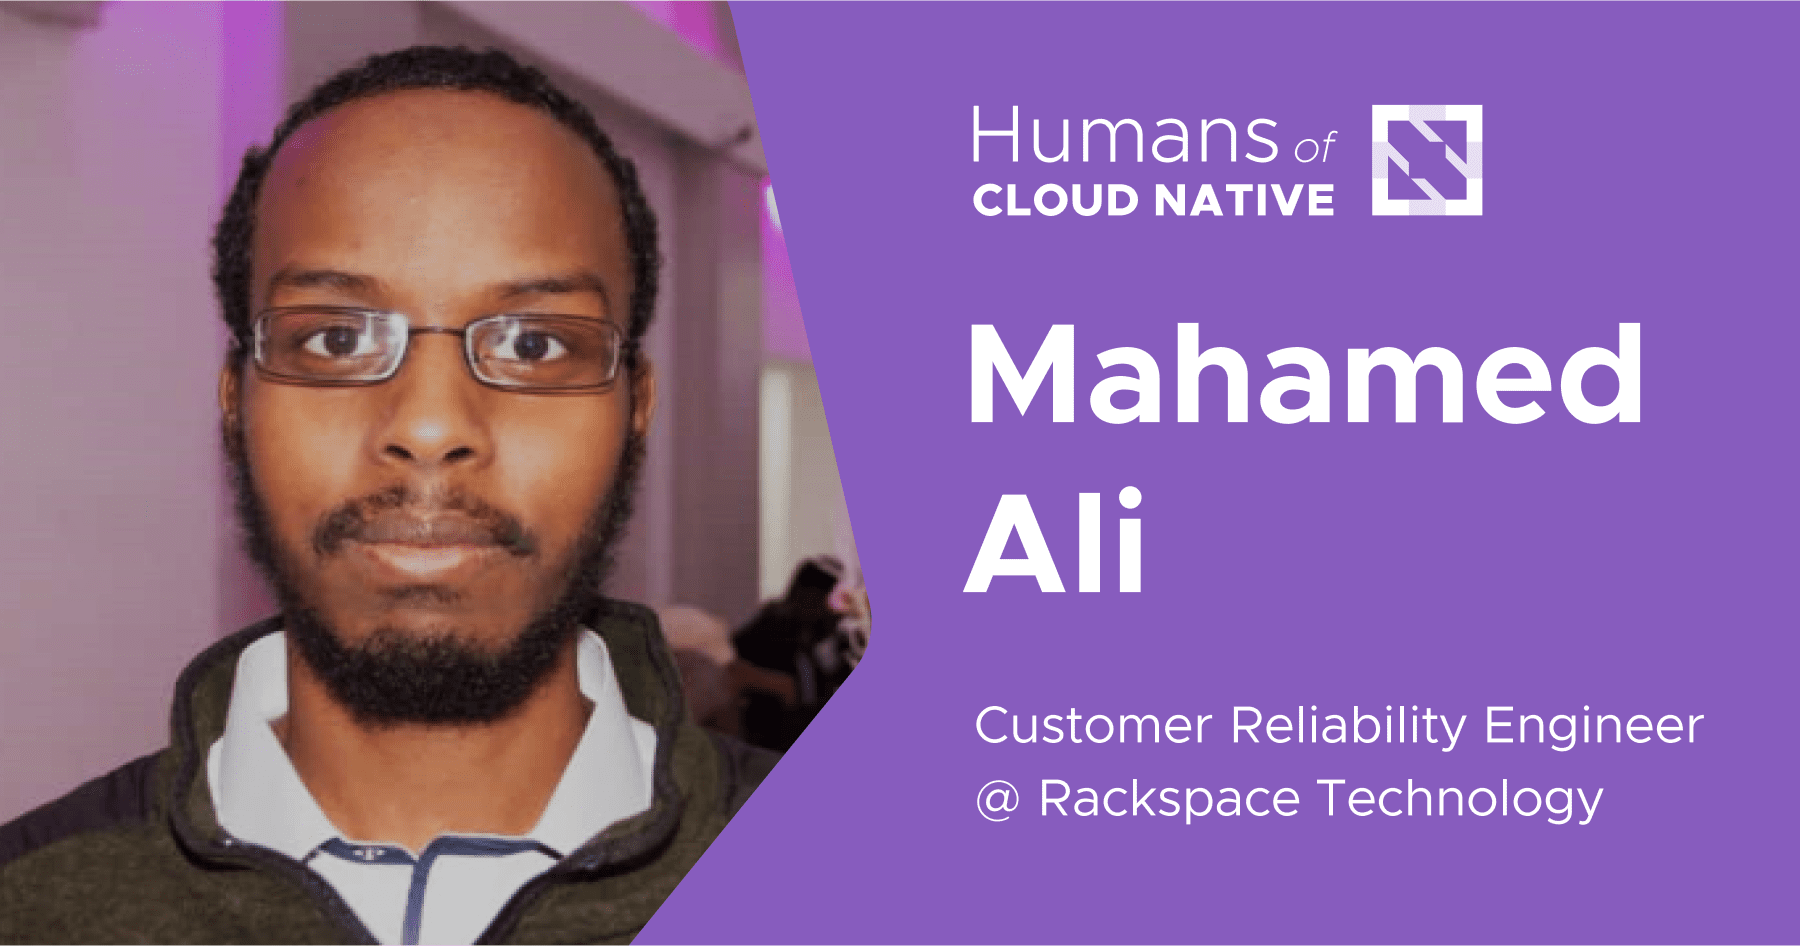 Humans of cloud native banner showing Mahamed Ali